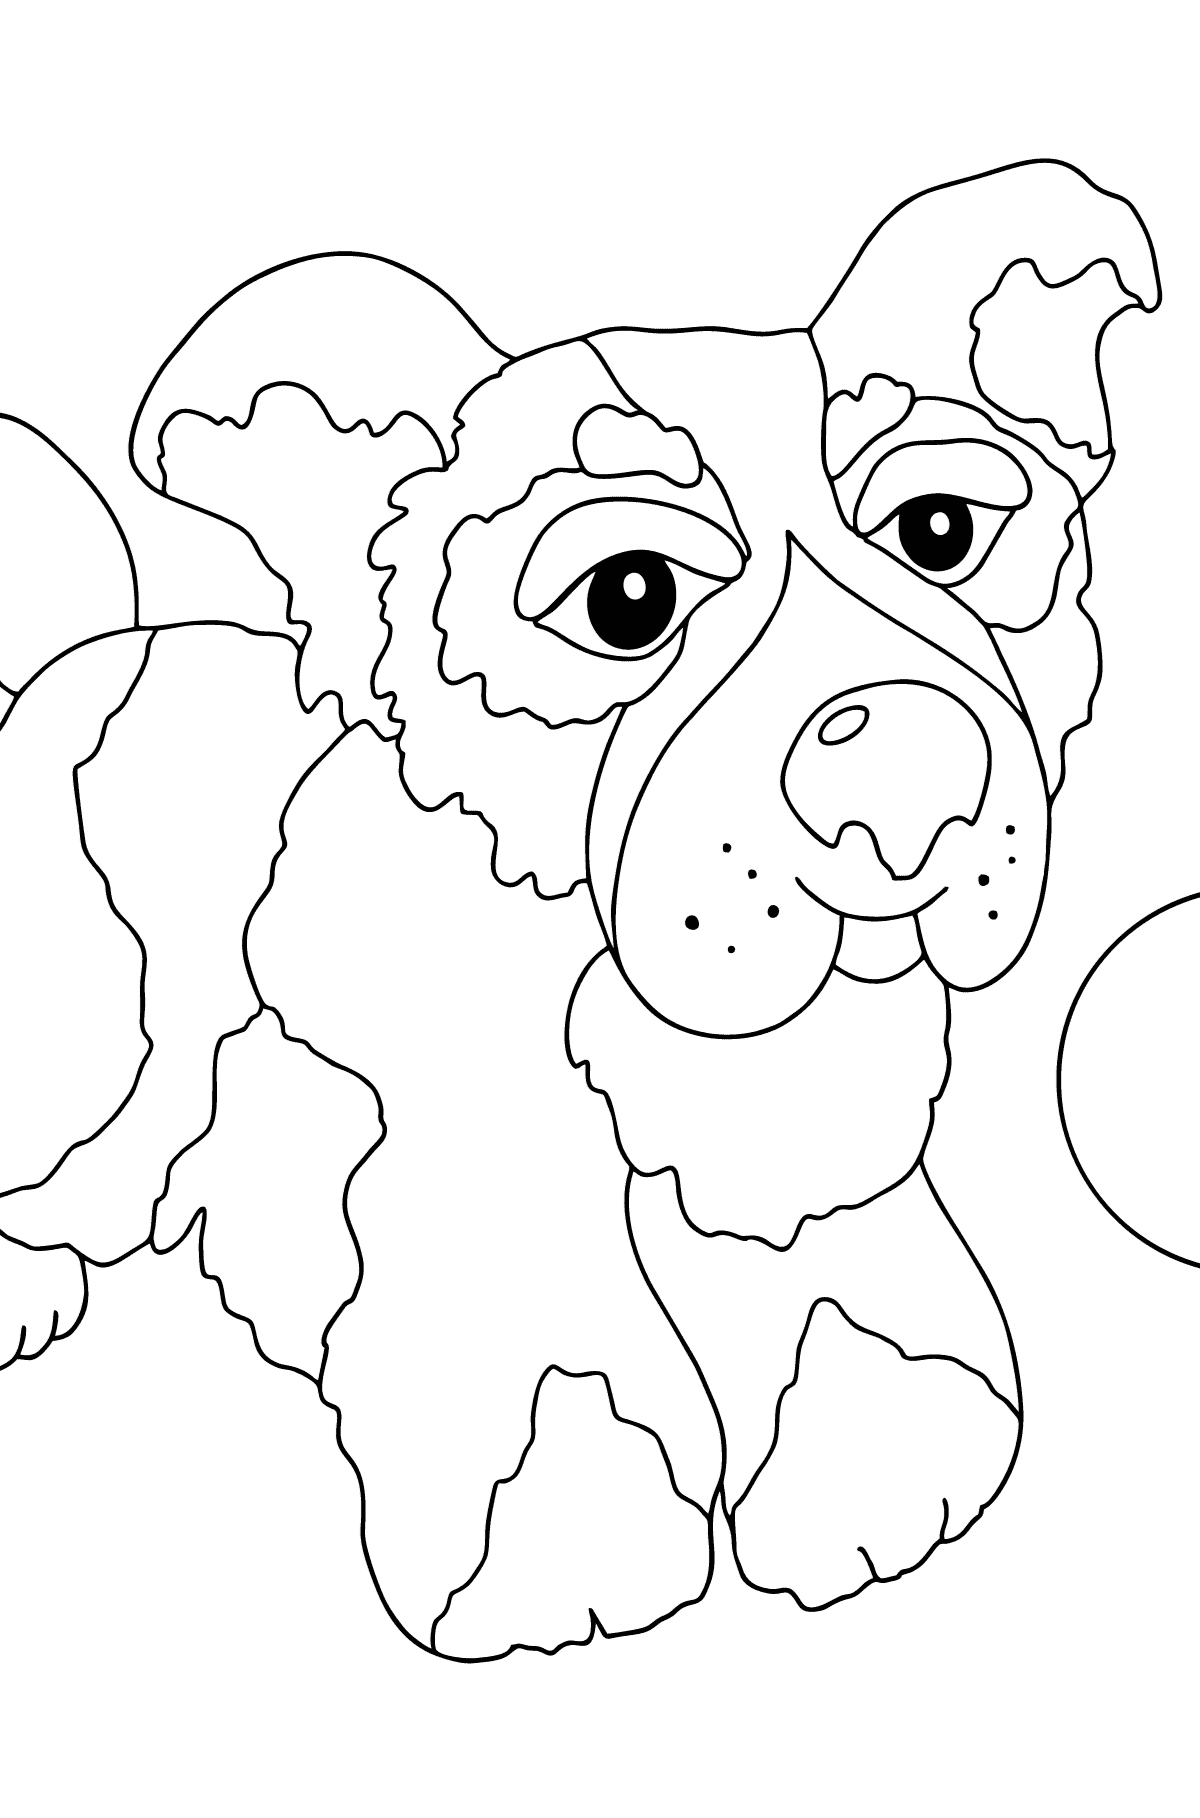 Раскраска Прекрасный Пес - Картинки для Детей